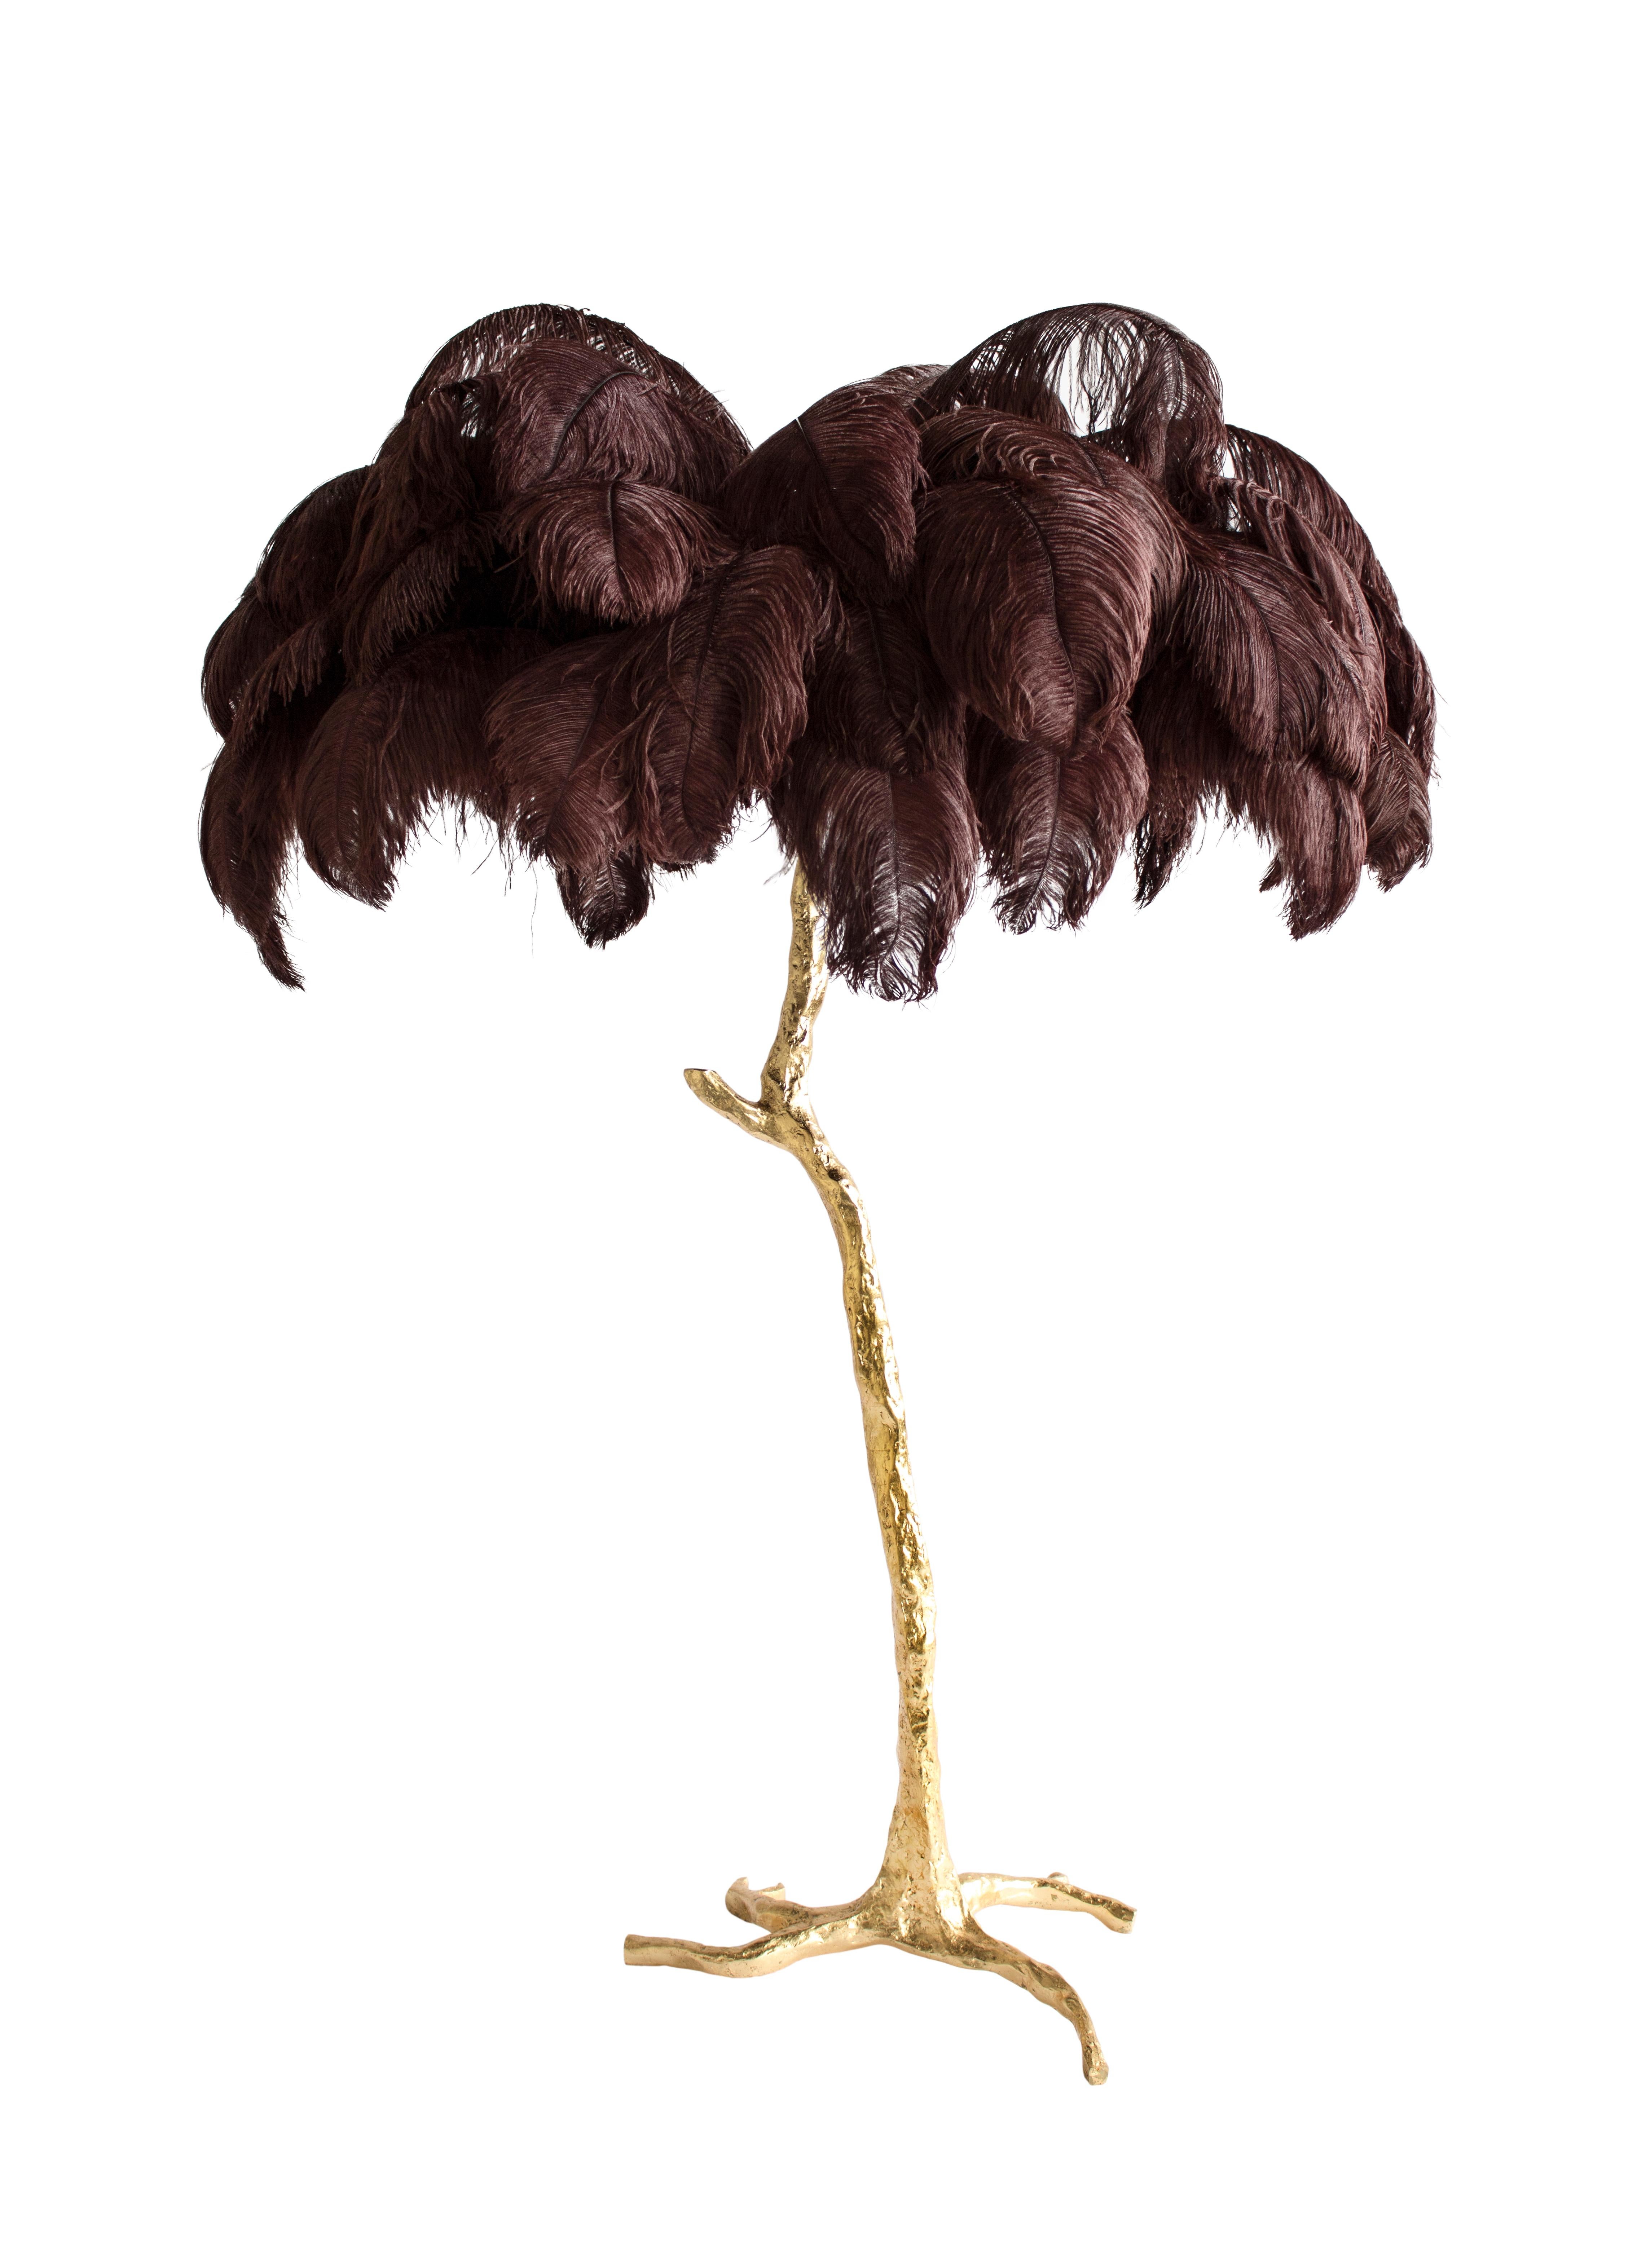 Le lampadaire Feather, pièce d'édition de A Modern Grand Tour.
Un palmier lumineux, resplendissant avec un feuillage de plumes d'autruche exquis, le lampadaire en plumes occupe le devant de la scène dans n'importe quel décor luxueux et apporte la